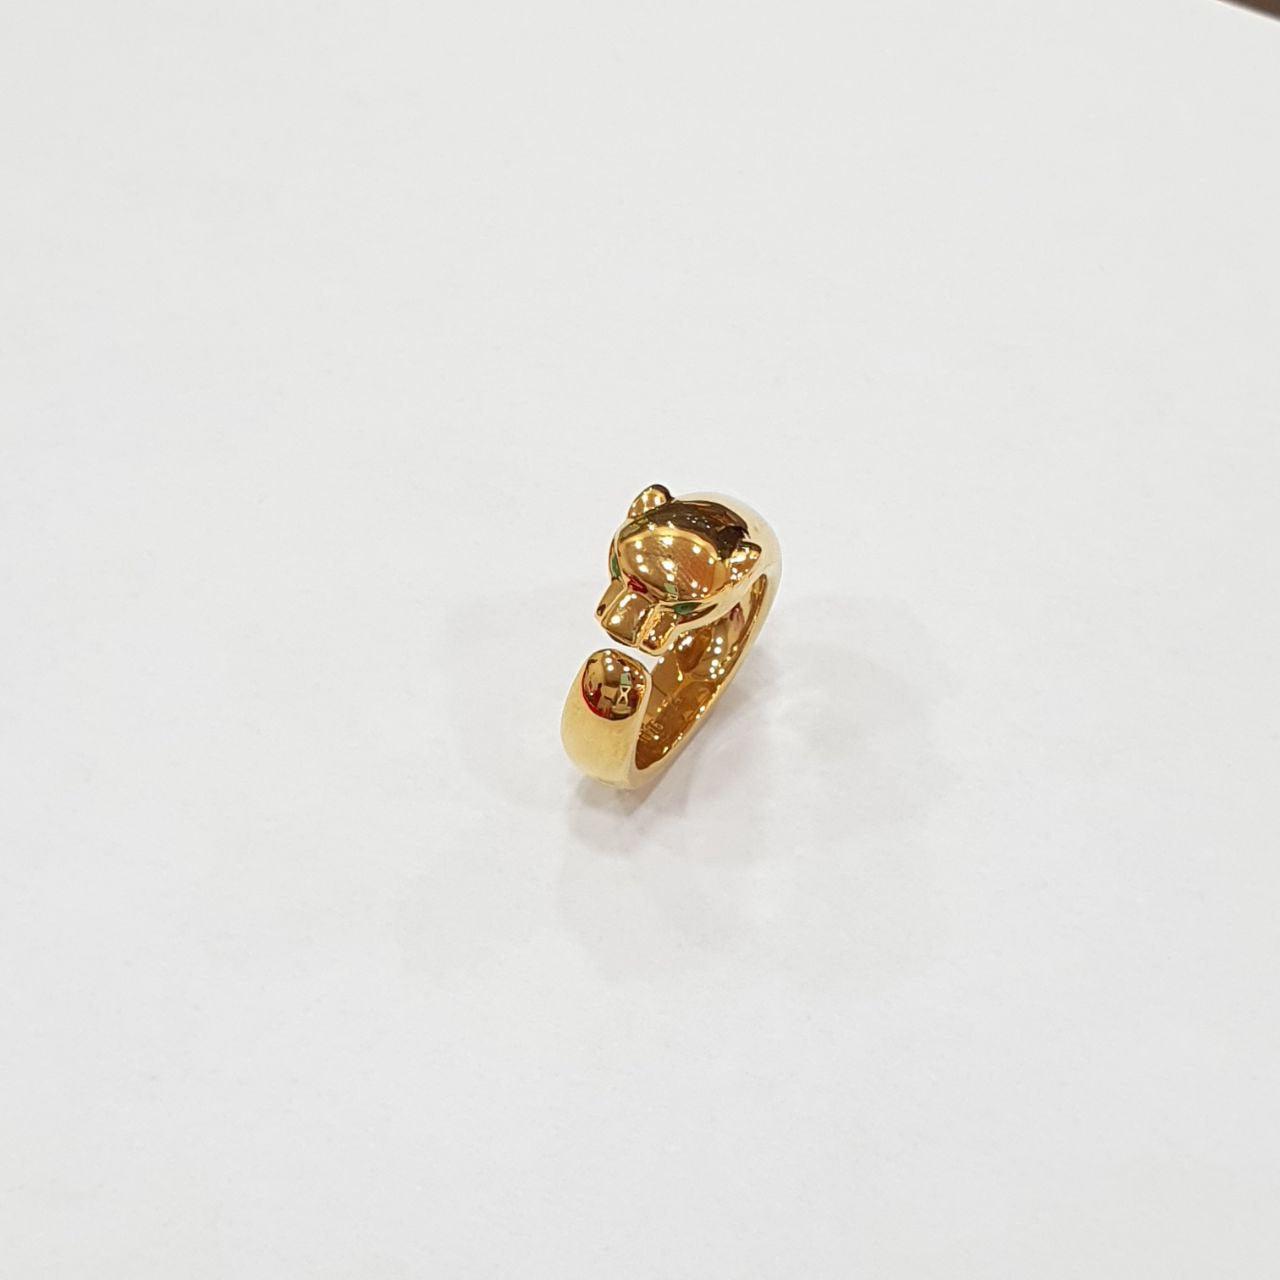 22K / 916 Gold Leopard Ring V2-916 gold-Best Gold Shop